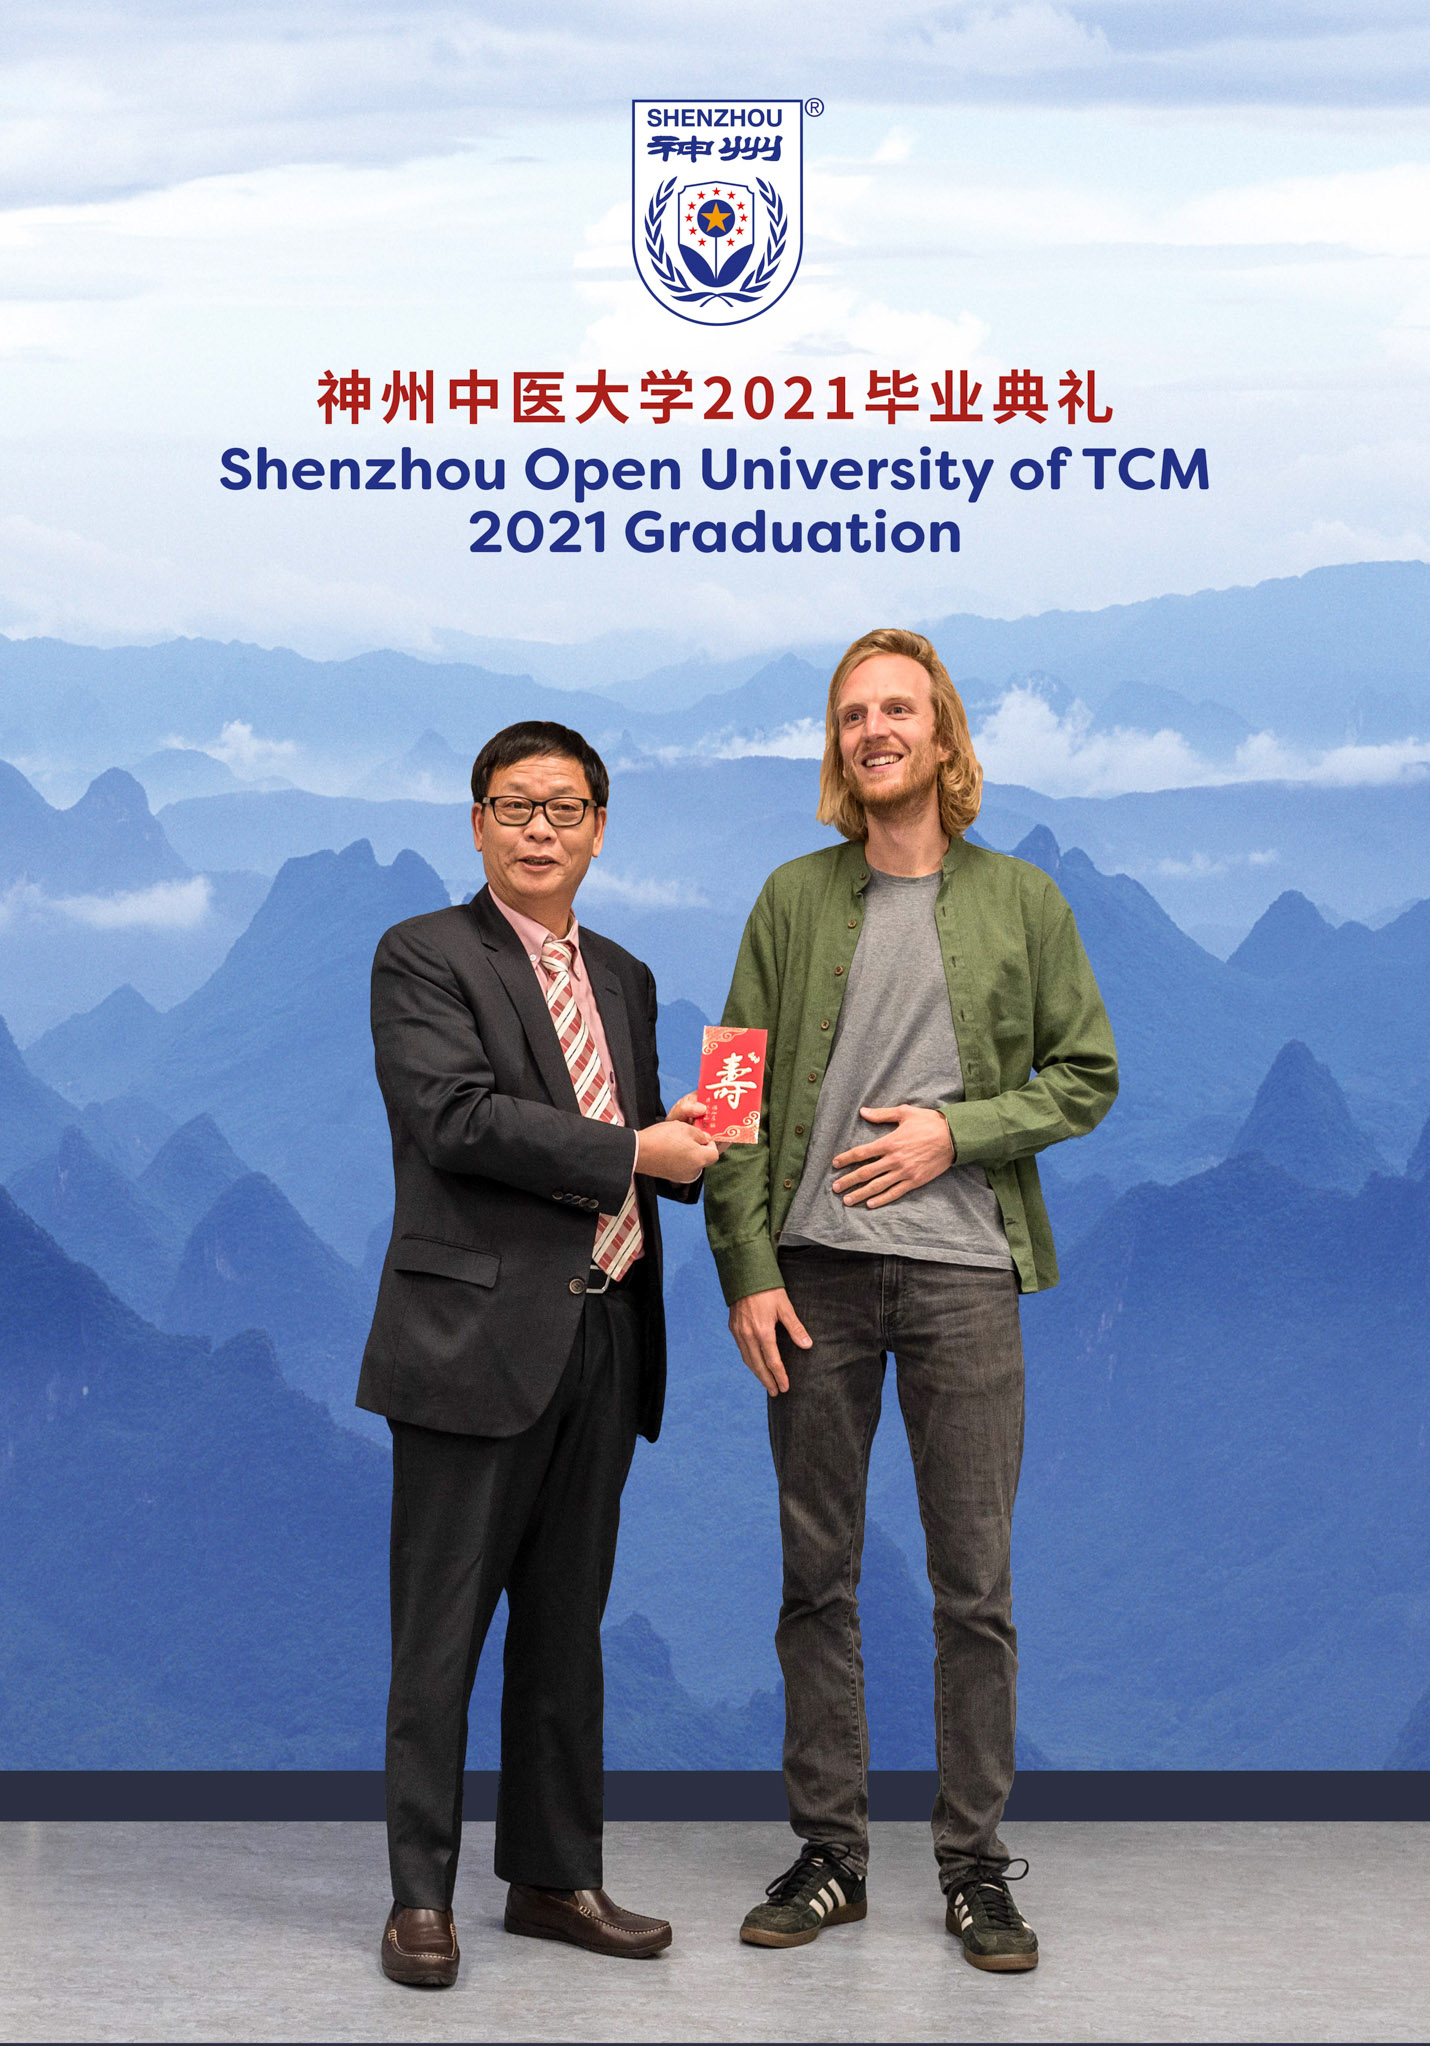 Speech by Carsten Smink - Graduation 2021 Shenzhou Open University of TCM